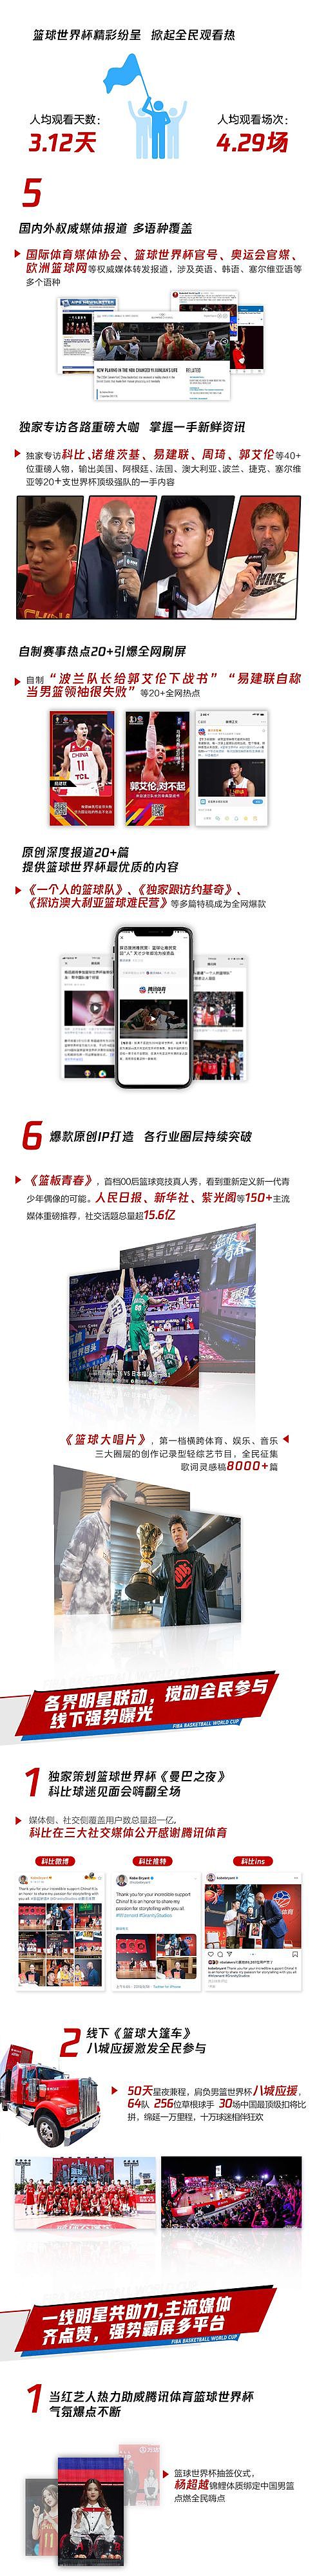 2019篮球世界杯数据报告：中国男篮输了 但中国篮球没有输 - 1